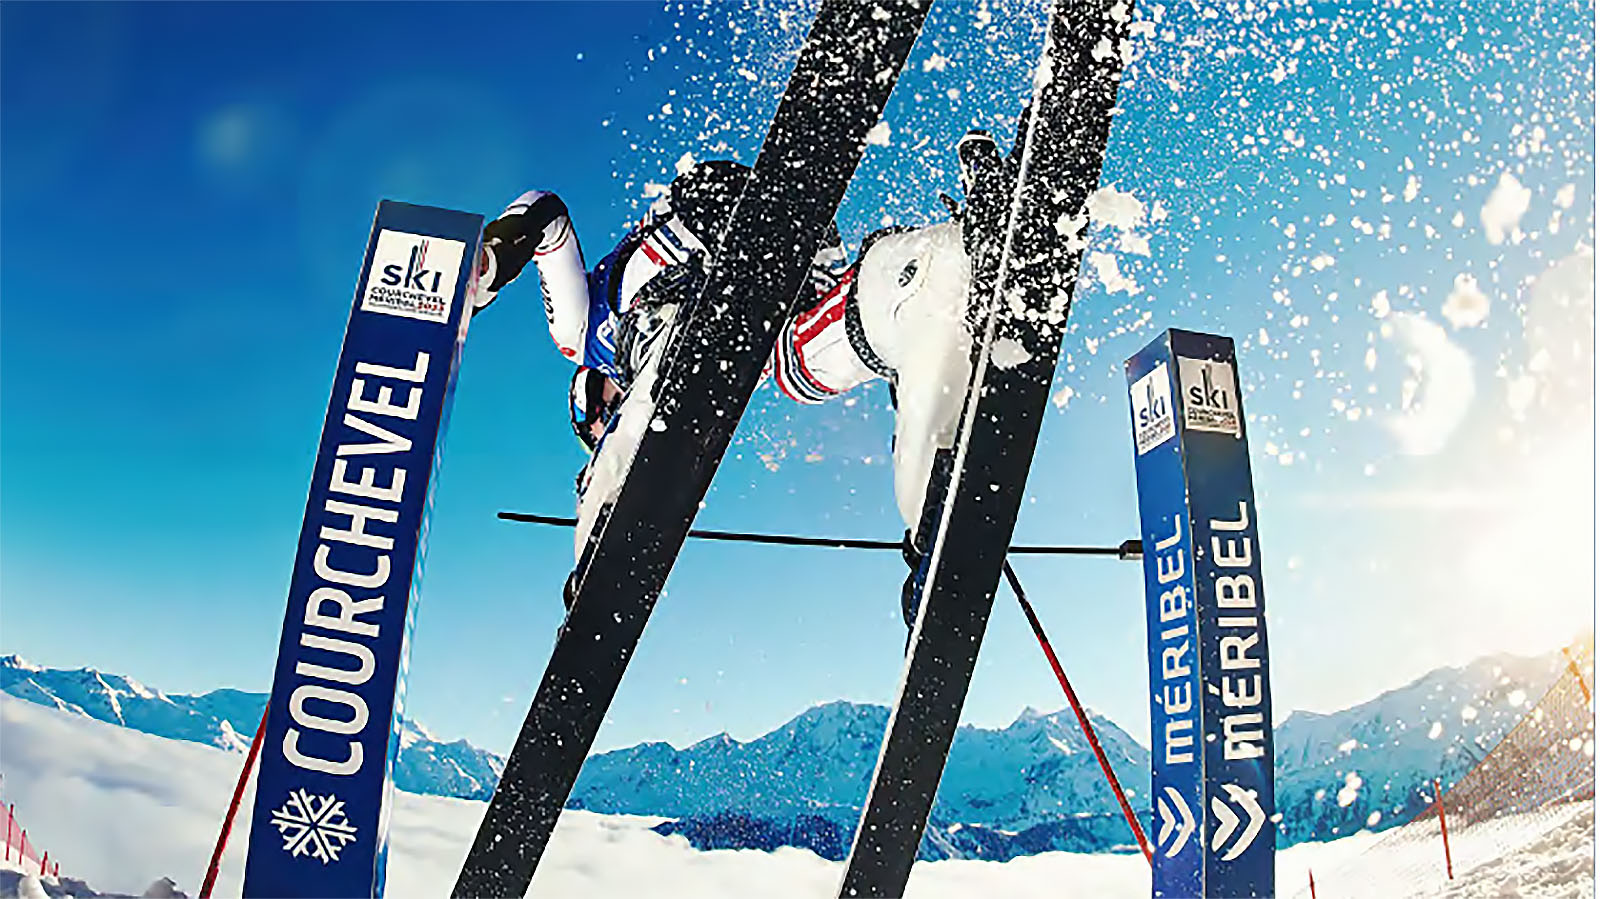 Championnats du monde de ski : tout ce qu'il faut savoir pour ne rien rater